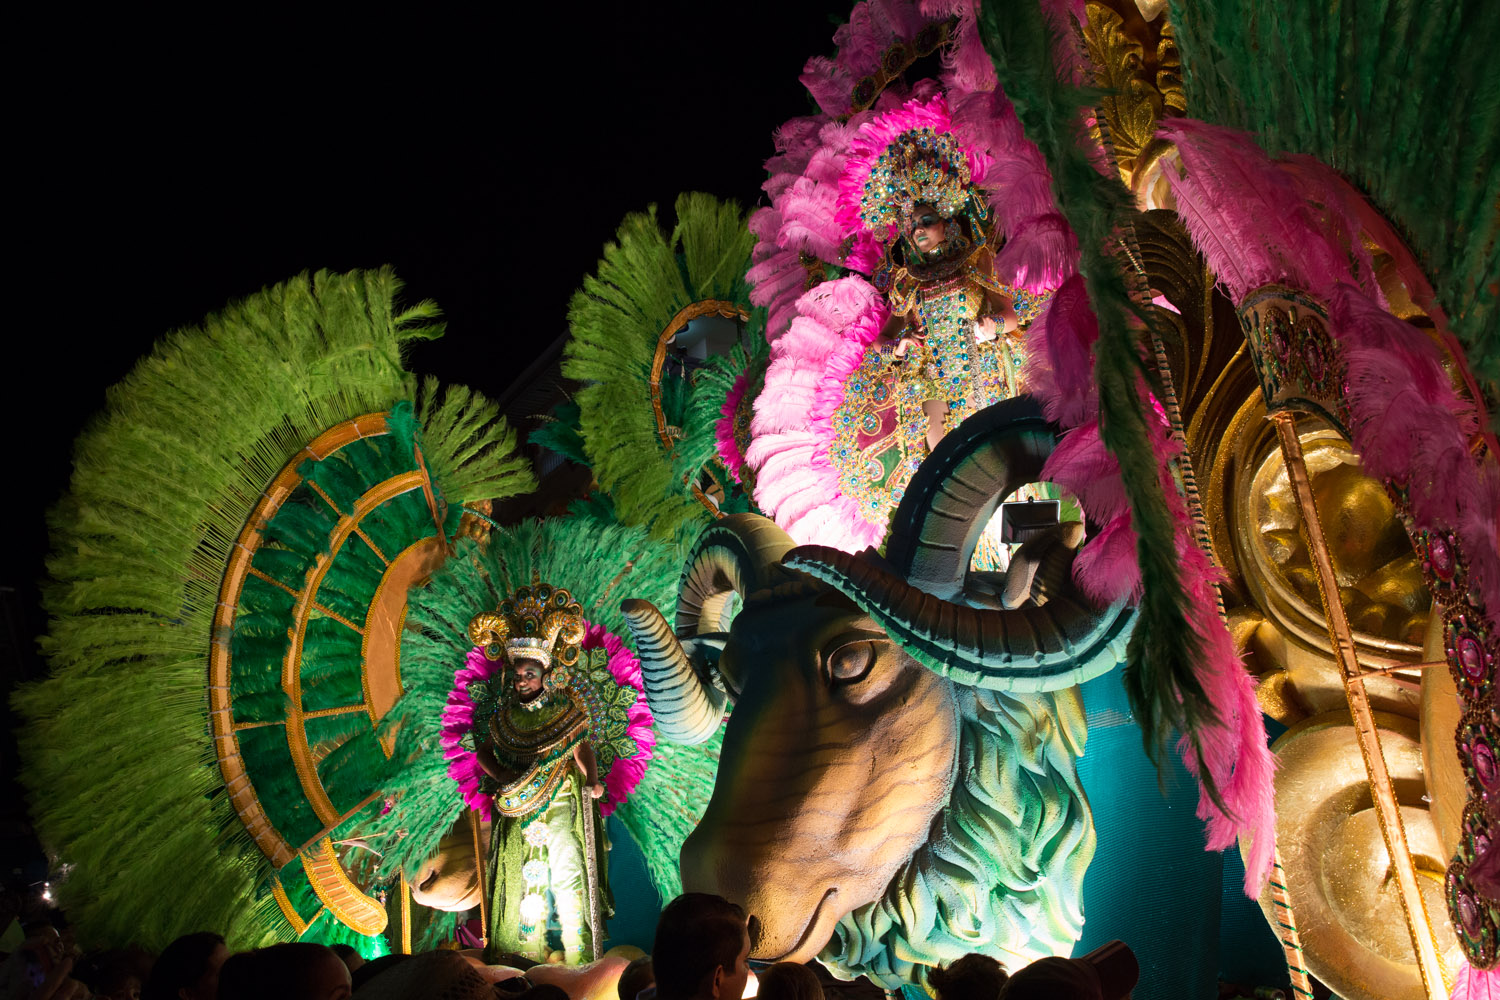 Carroza alegórica de carnaval en el parque Porras de Las Tablas de noche